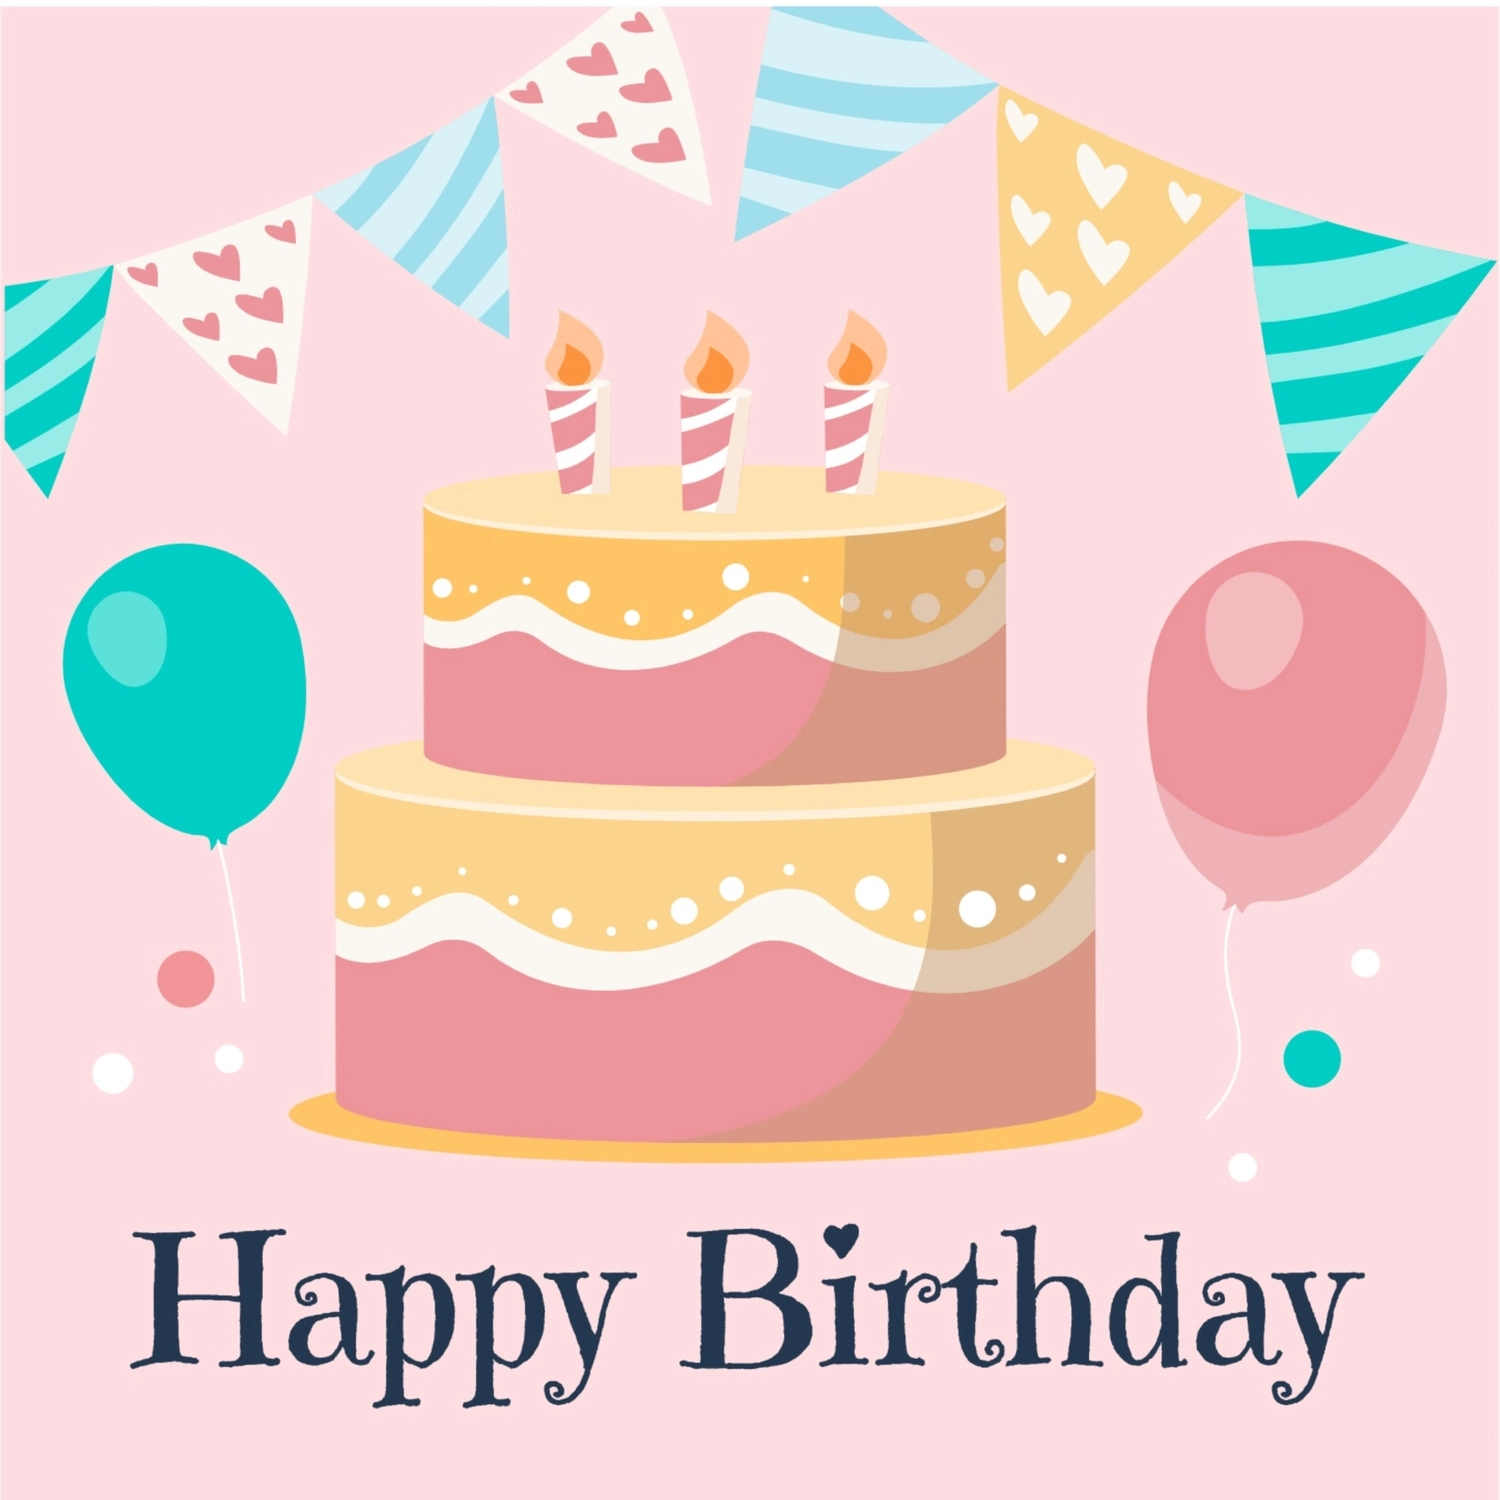 誕生日カード 二段ケーキ, 수채화 물감, 생일 카드, 만들기, 생일 카드 템플릿